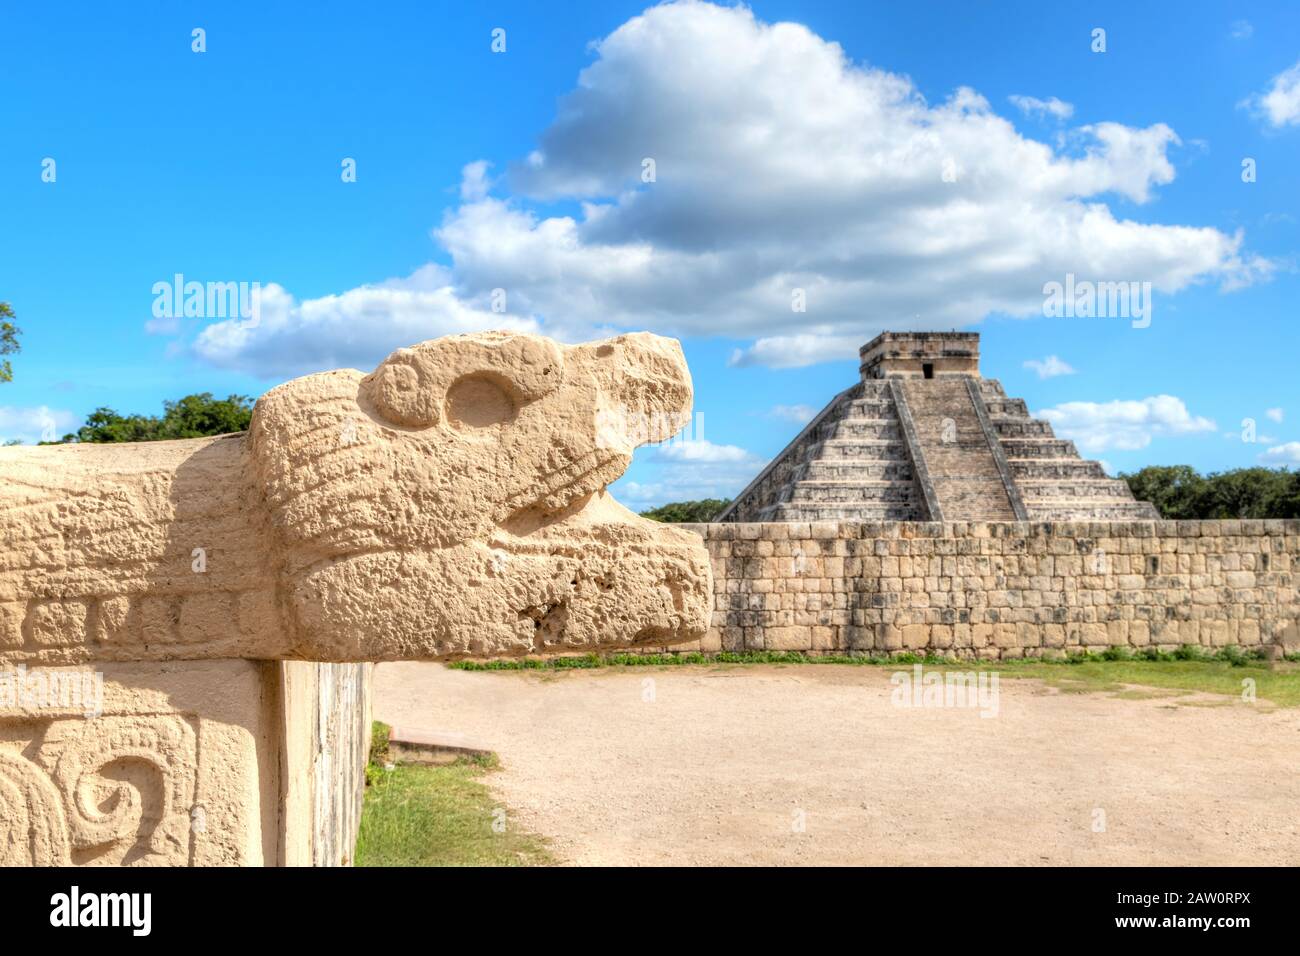 Sculpture de la tête de serpent maya, vieille de plusieurs siècles, et Temple de la pyramide Kukulcan à Chichen Itza, dans la péninsule du Yucatan au Mexique. Un site du patrimoine mondial, il i Banque D'Images